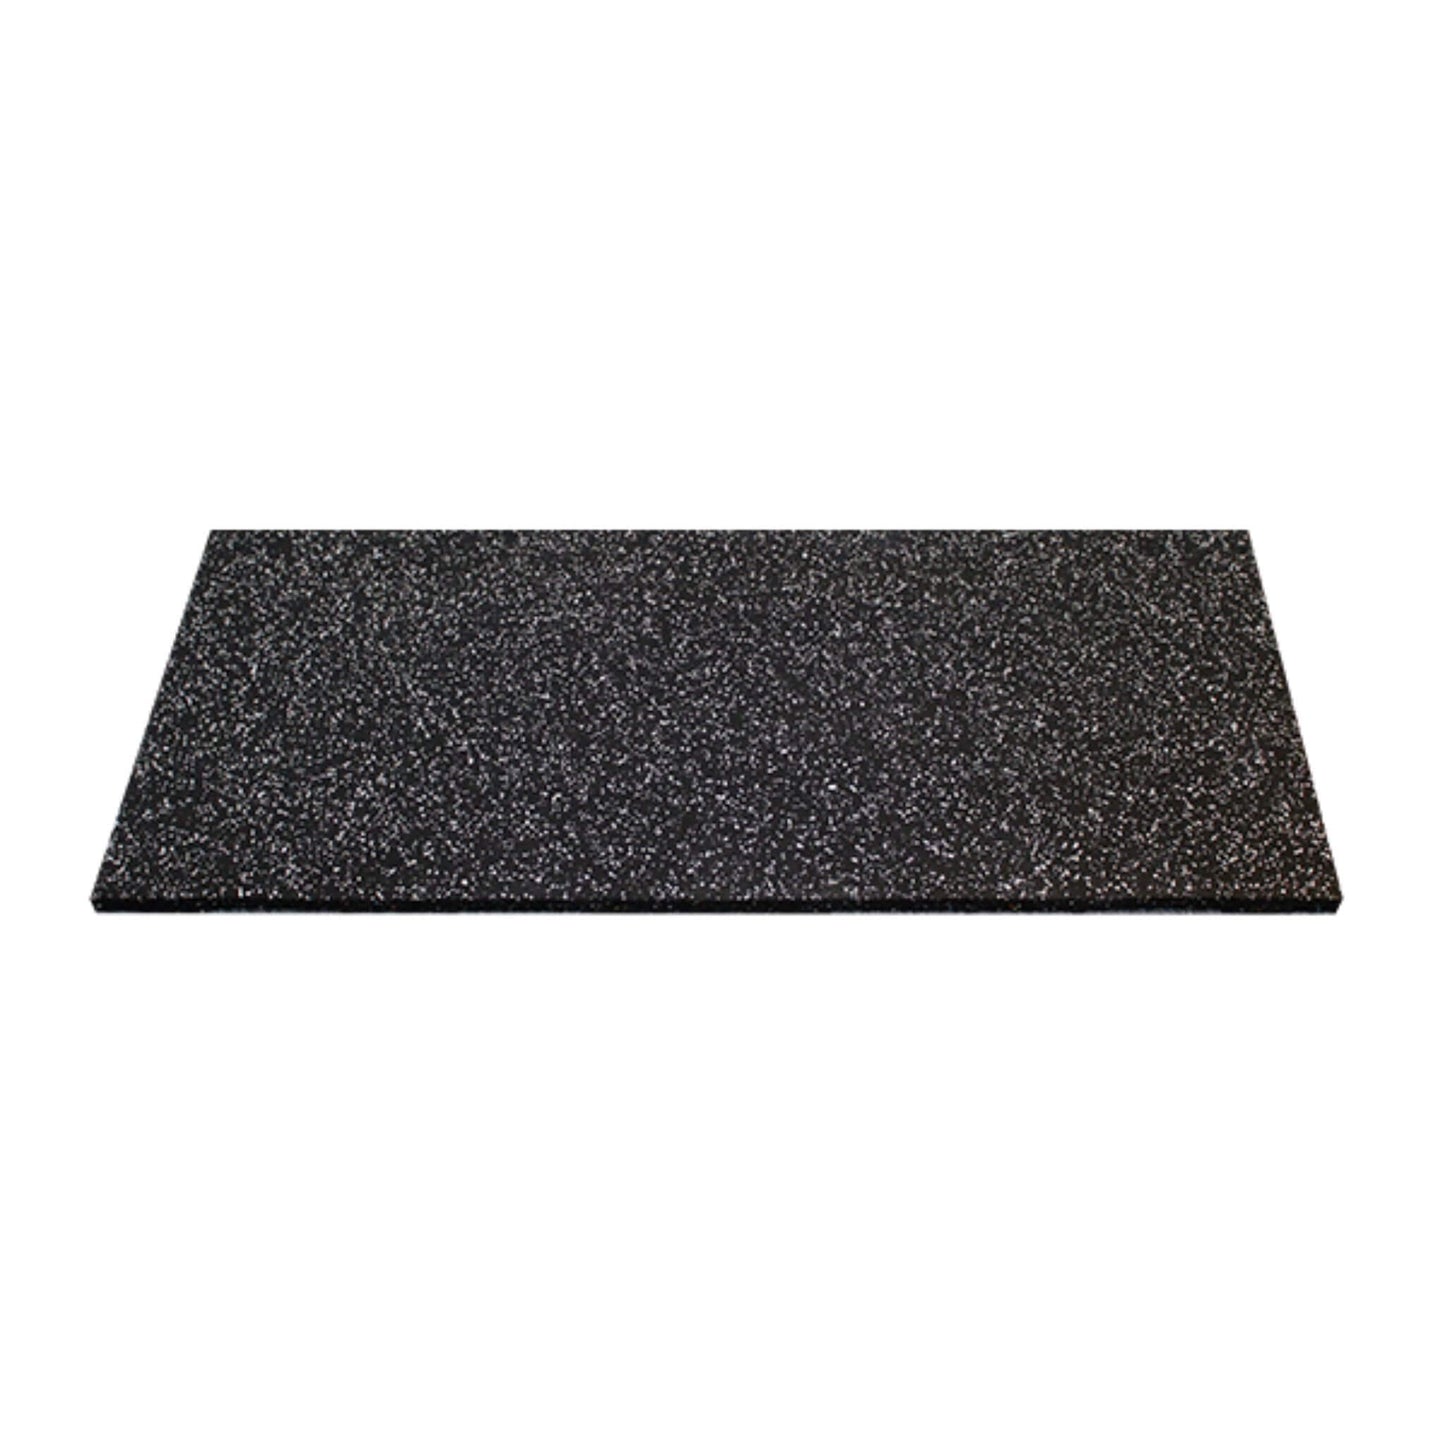 20mm Premium Black Rubber Gym Floor Tile (1m x 0.5m / Grey Fleck)